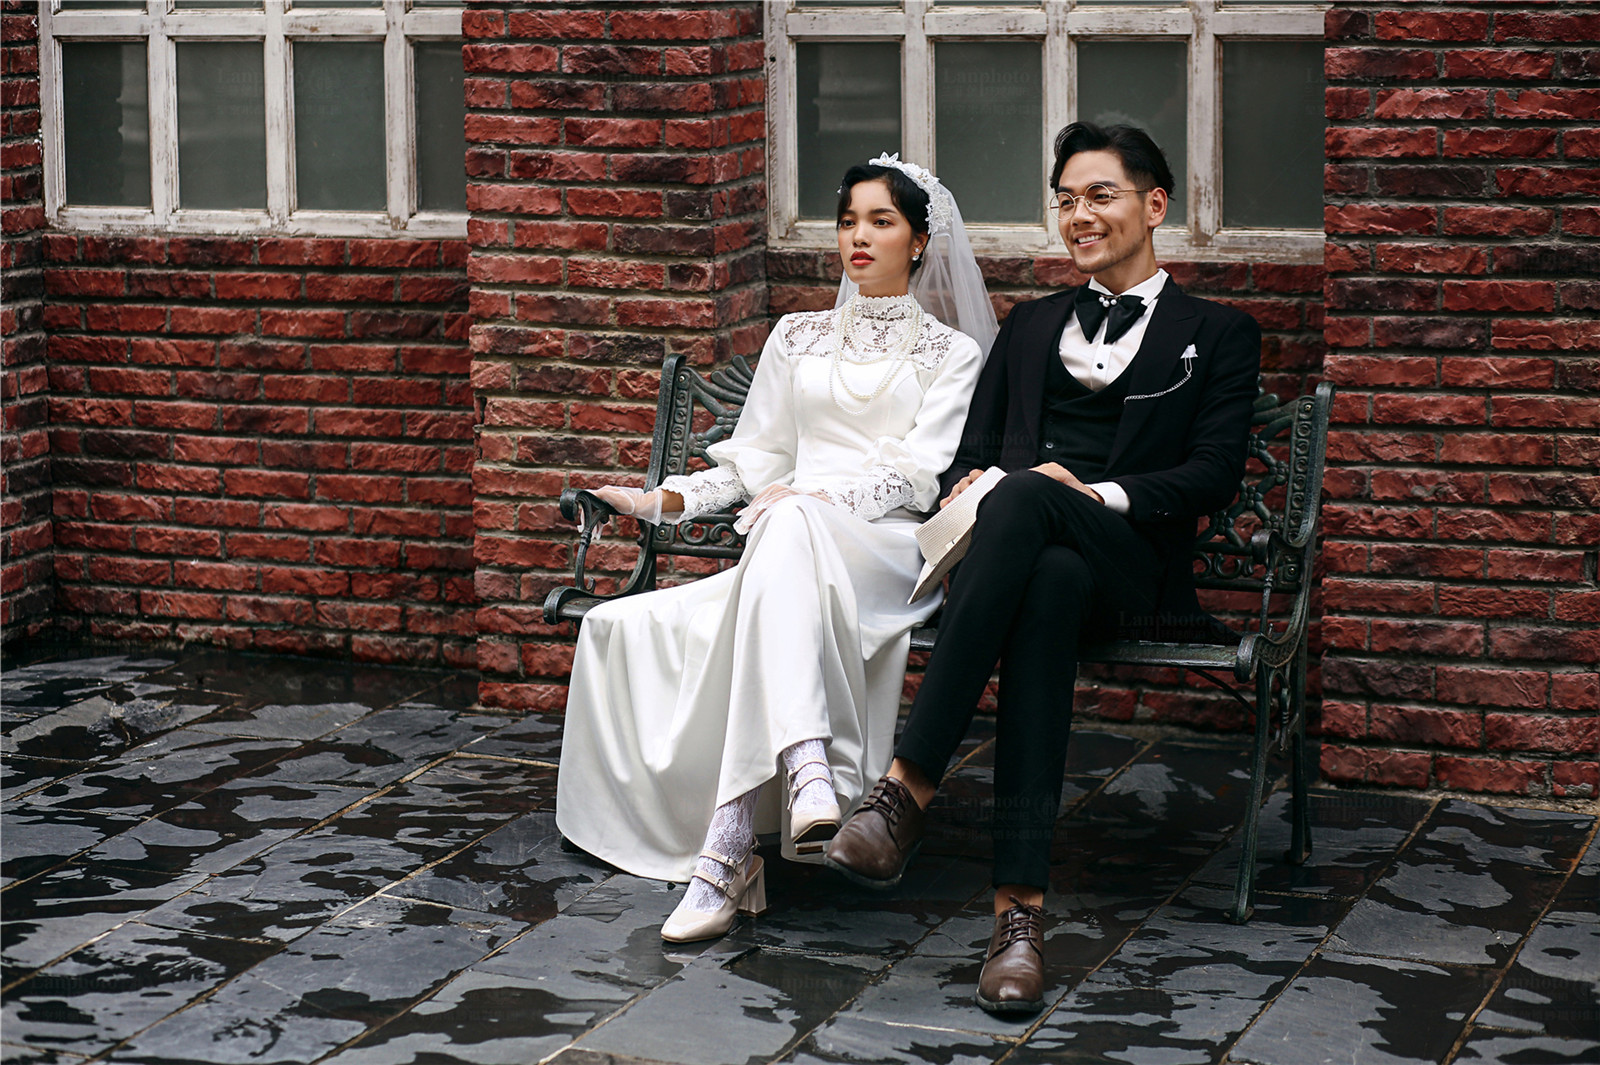 锦年小镇_近期主题 | 作品展示 | 深圳皇室米兰婚纱摄影集团